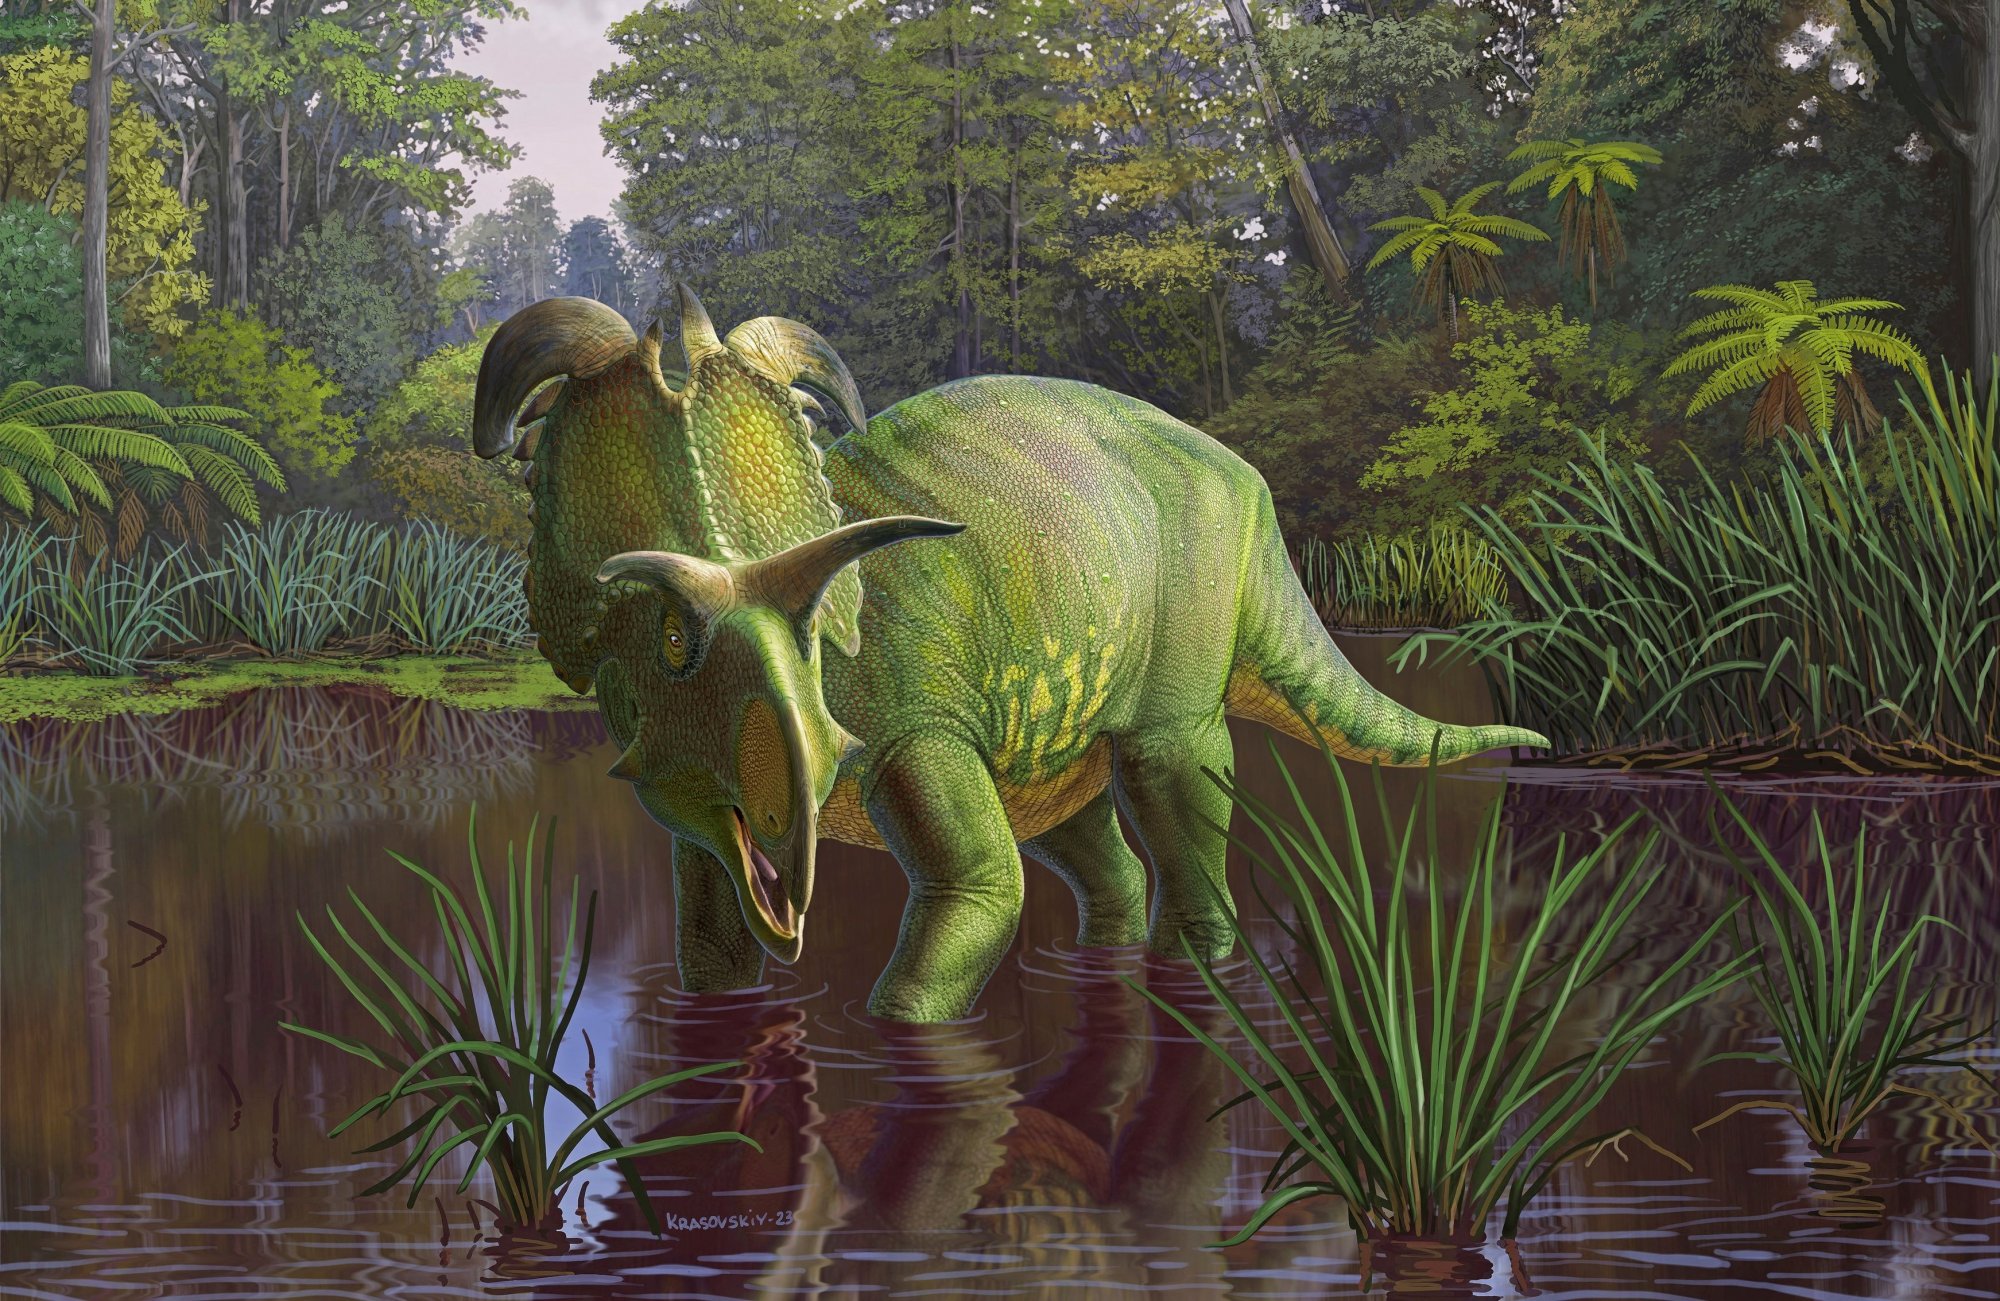 Νέο είδος δεινόσαυρου ήταν σαν διασταύρωση ρινόκερου με παπαγάλο